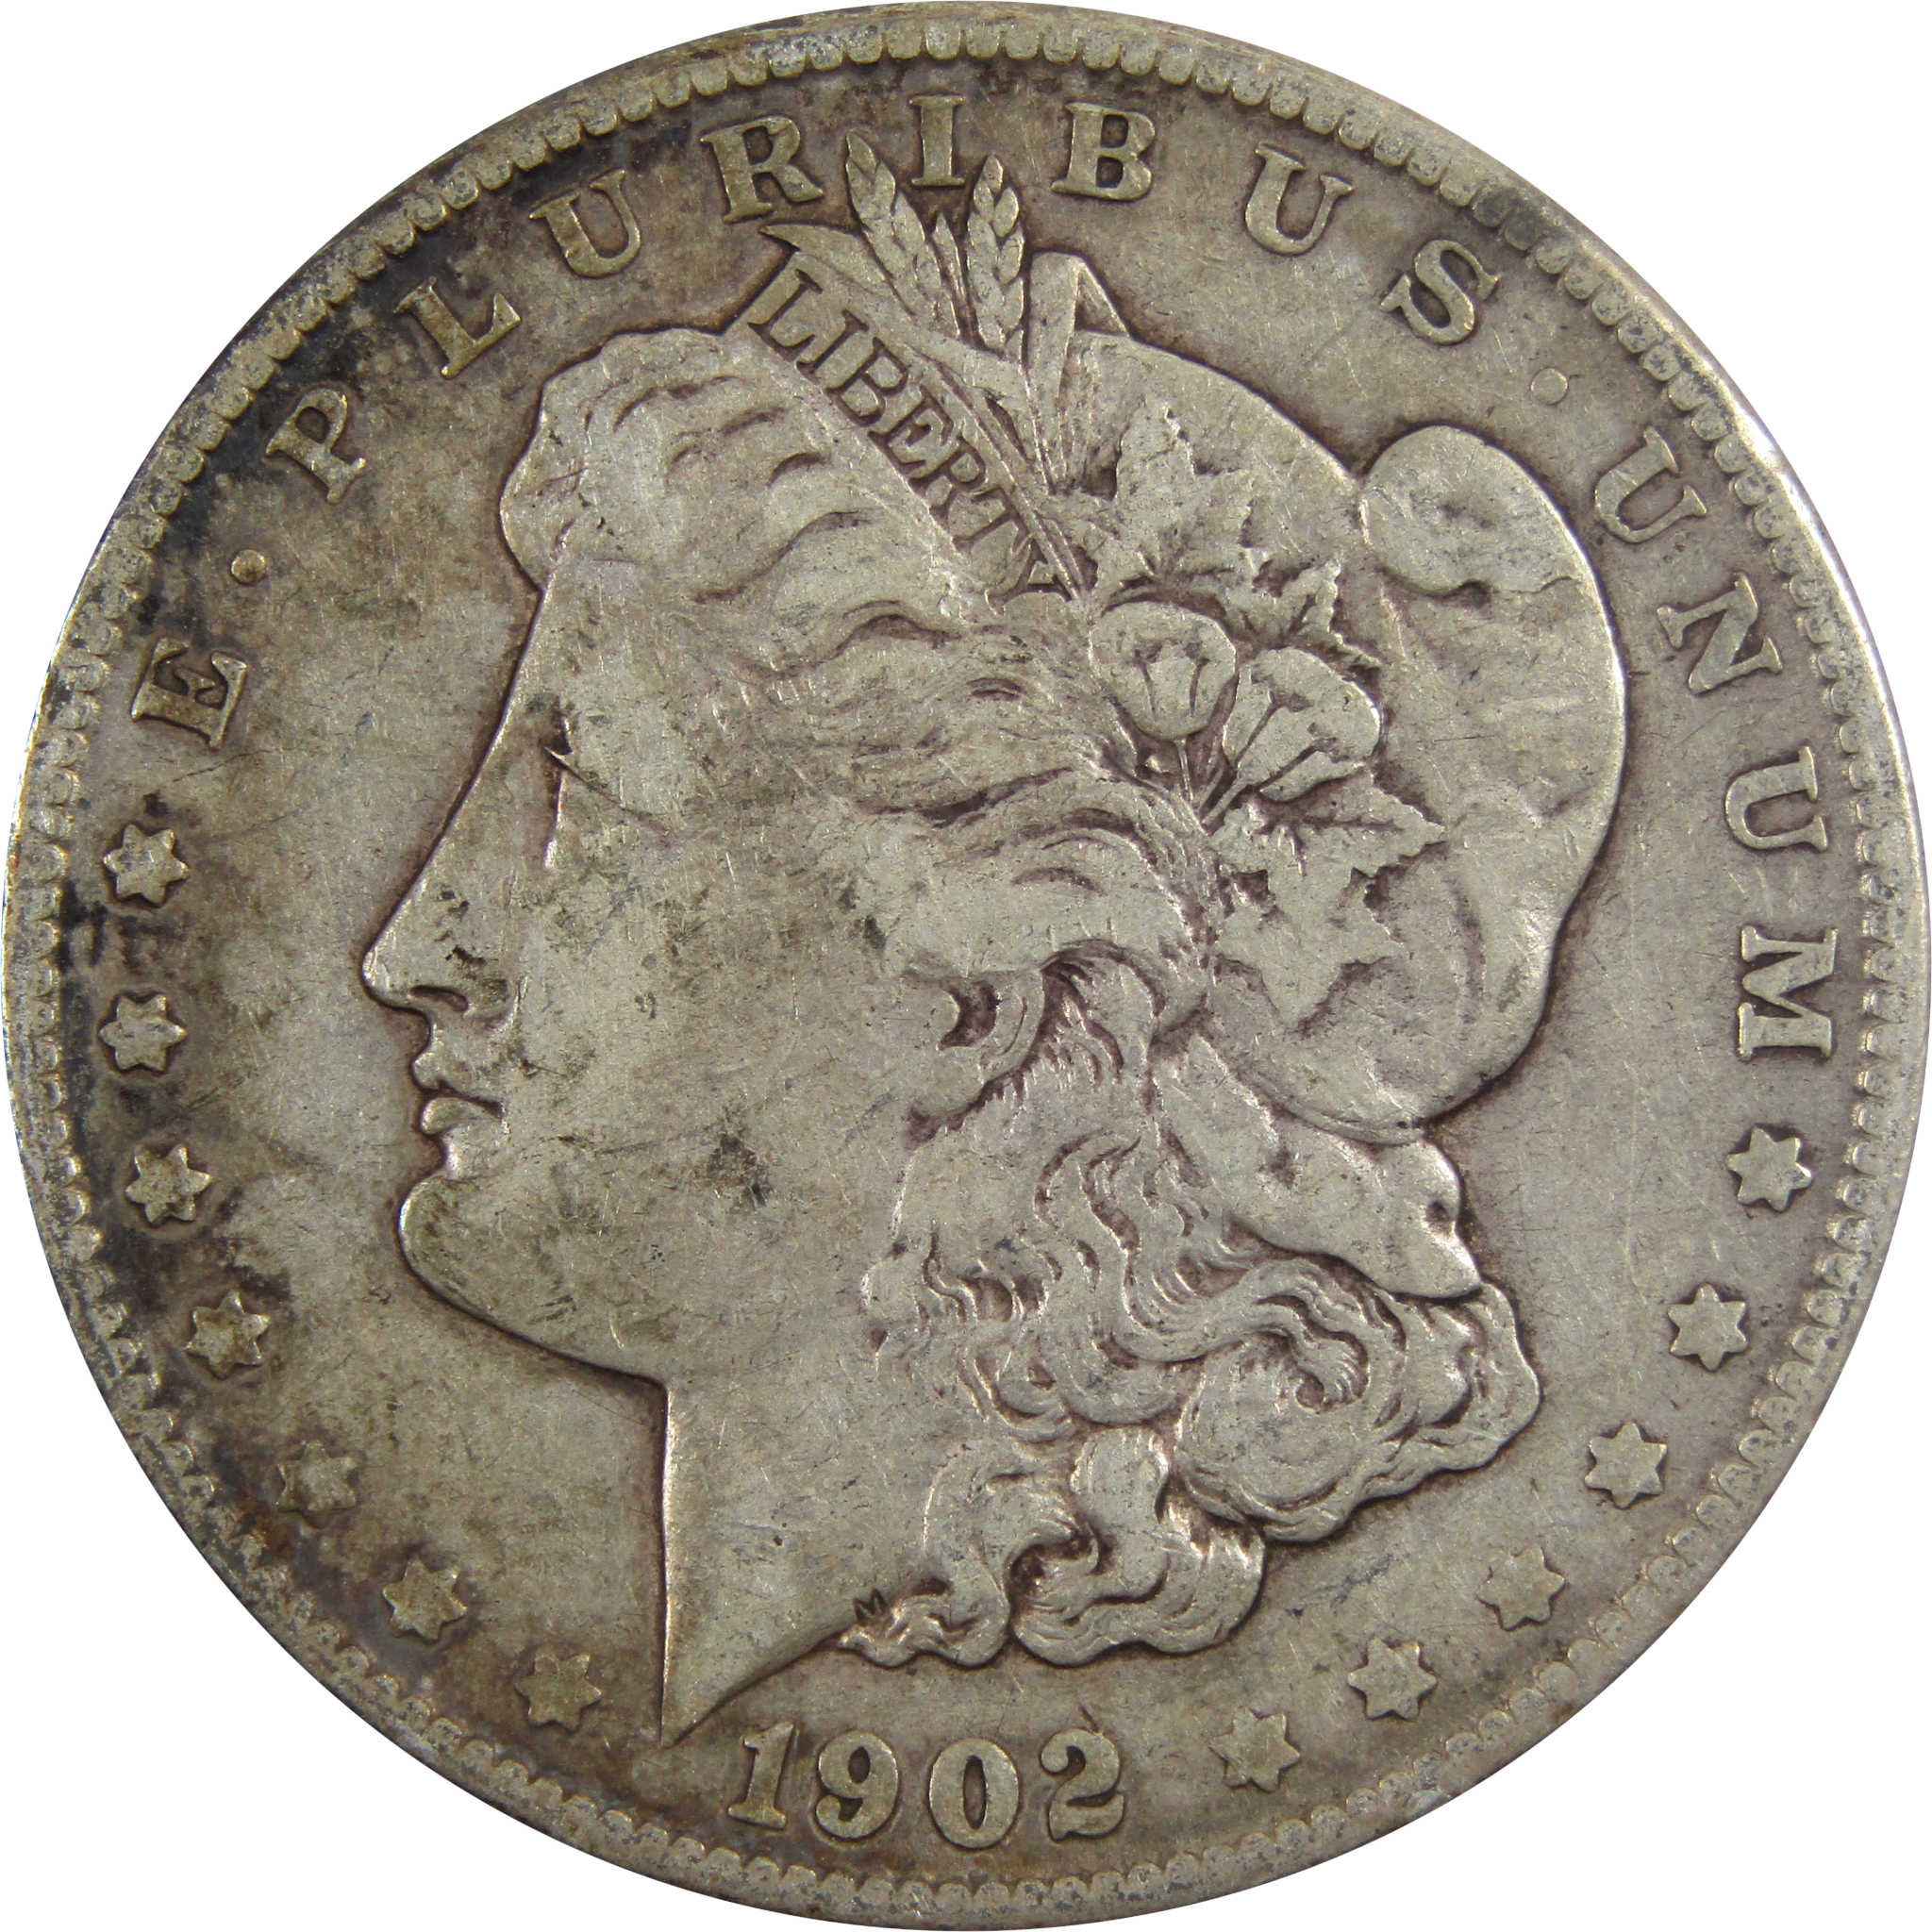 1902 O Morgan Dollar F Fine 90% Silver $1 Coin SKU:I5586 - Morgan coin - Morgan silver dollar - Morgan silver dollar for sale - Profile Coins &amp; Collectibles